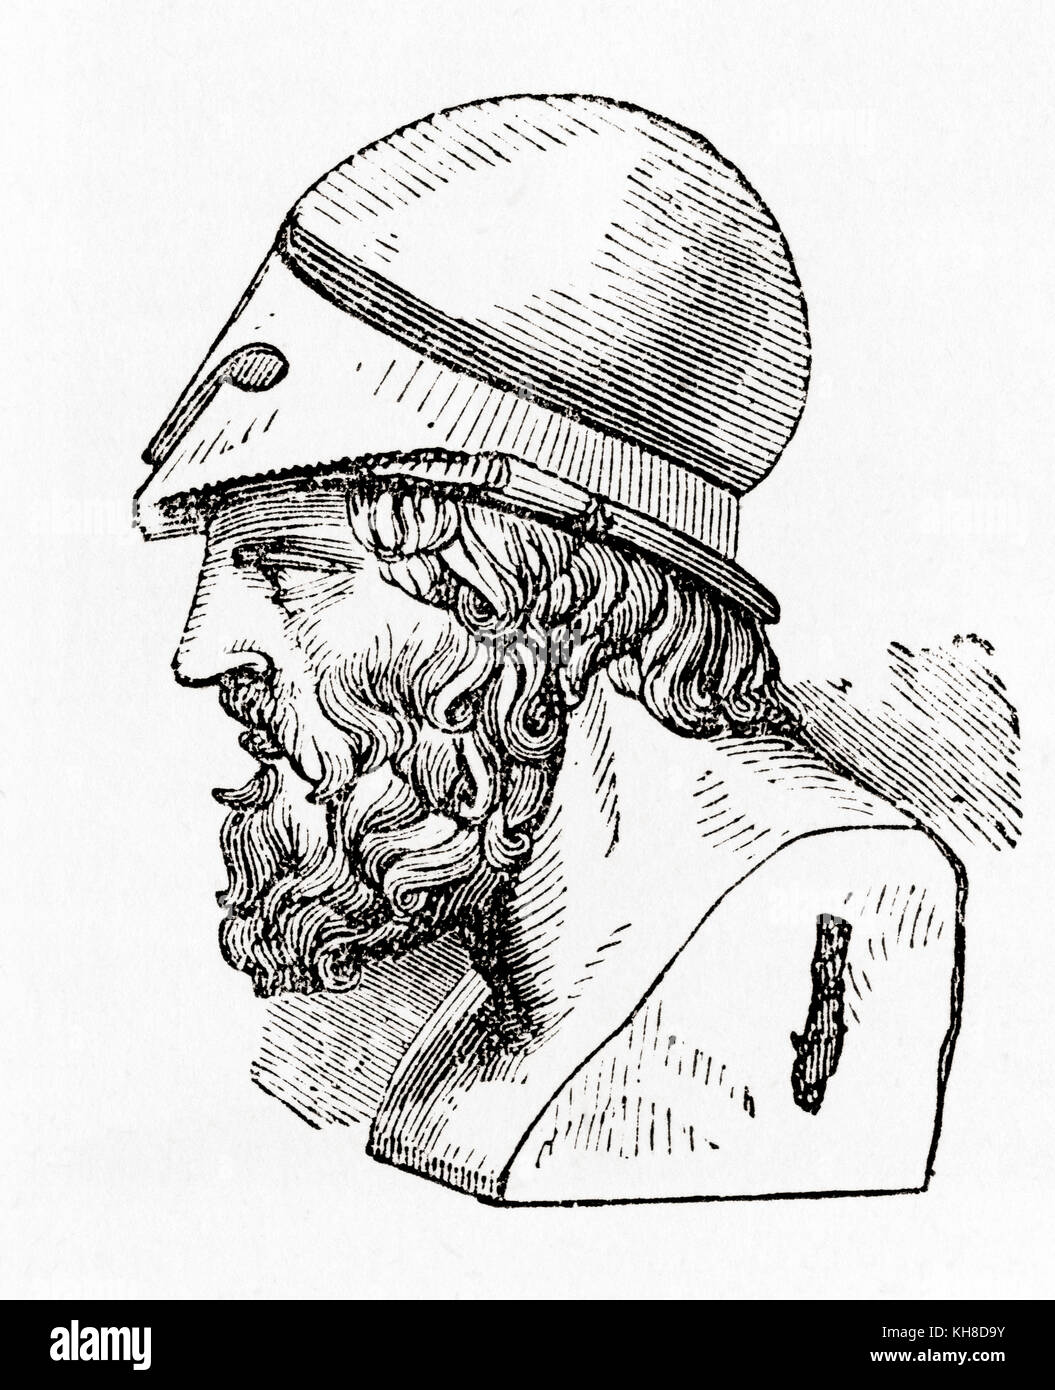 Aristides, 530 v. Chr. – 468 v. Chr. Der alte Athener Staatsmann. Aus Ward and Lock's Illustrated History of the World, veröffentlicht um 1882. Stockfoto